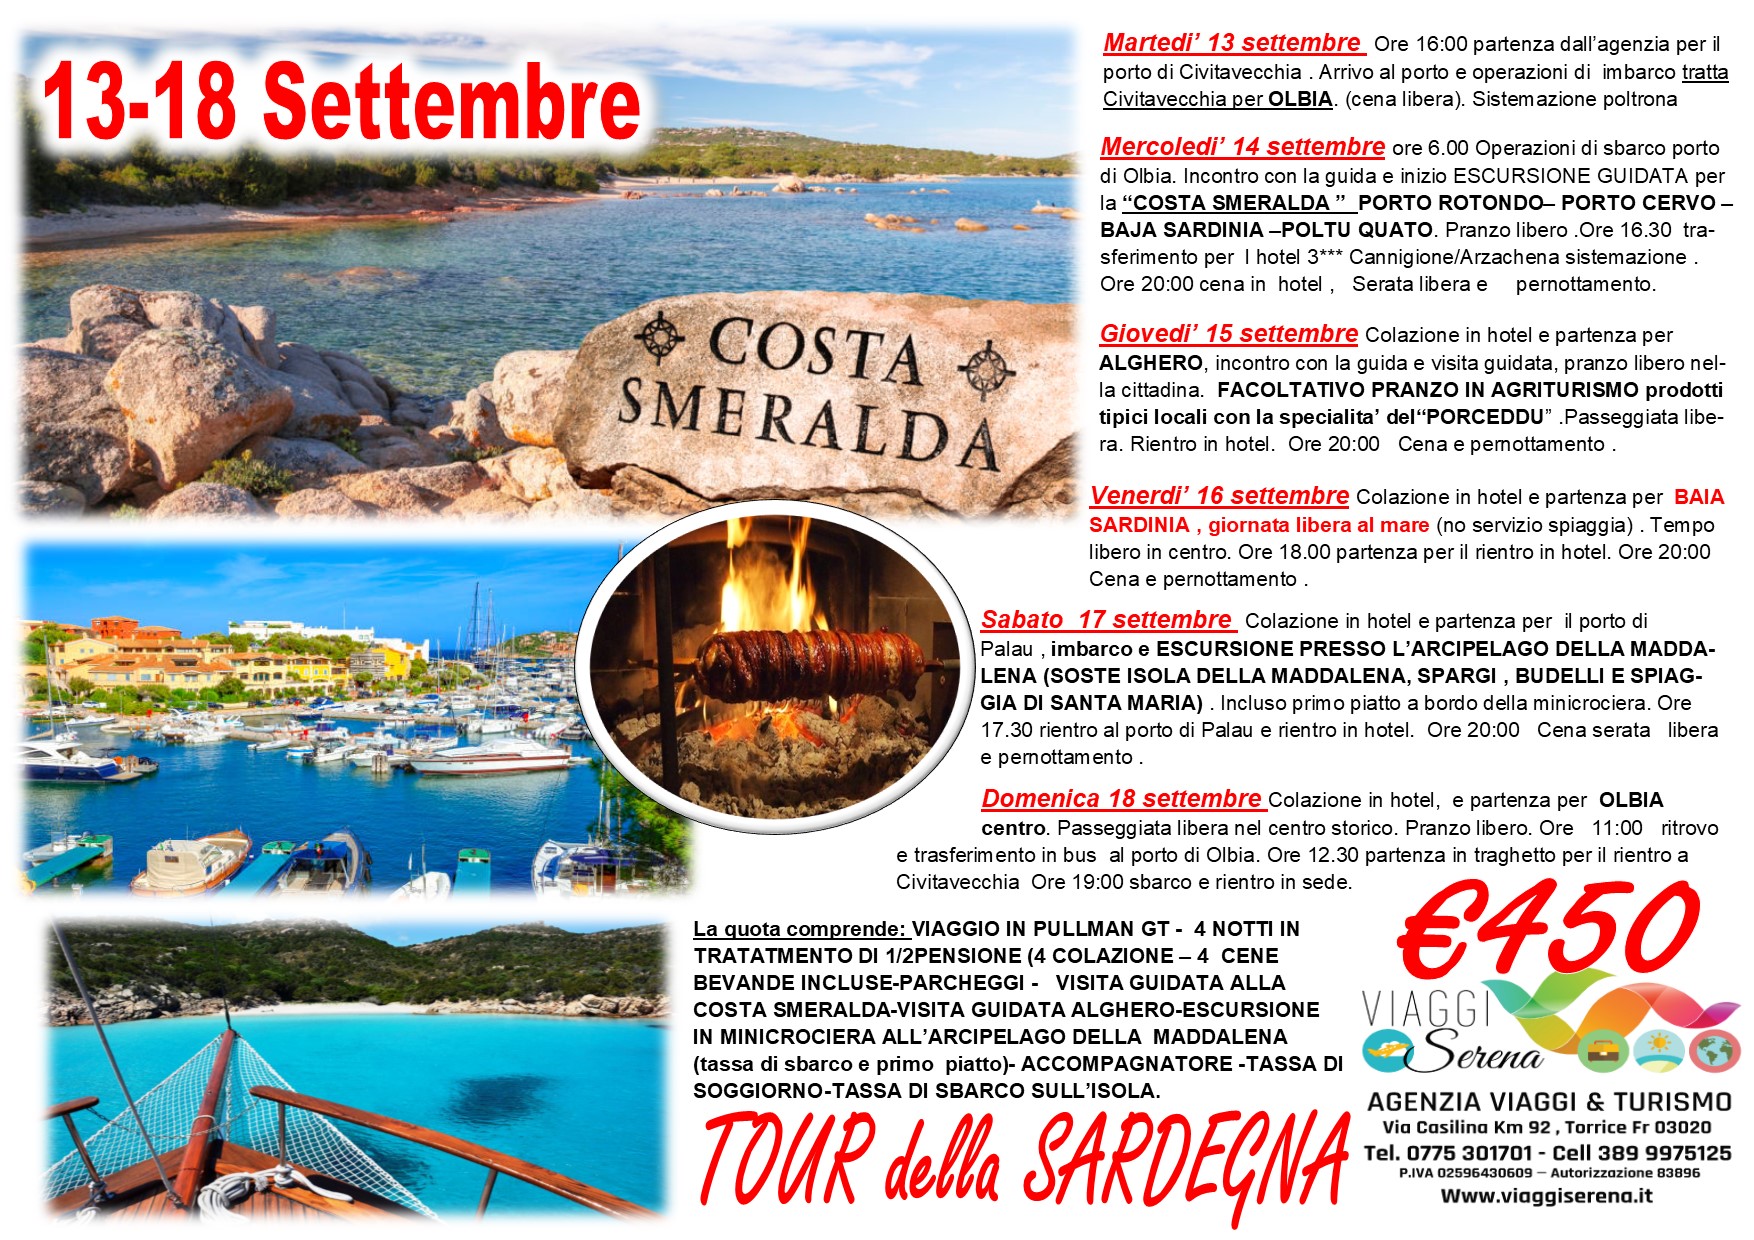 Viaggi di Gruppo: Sardegna Tour & Mare 13-18 Settembre “speciale 6 giorni” € 450,00